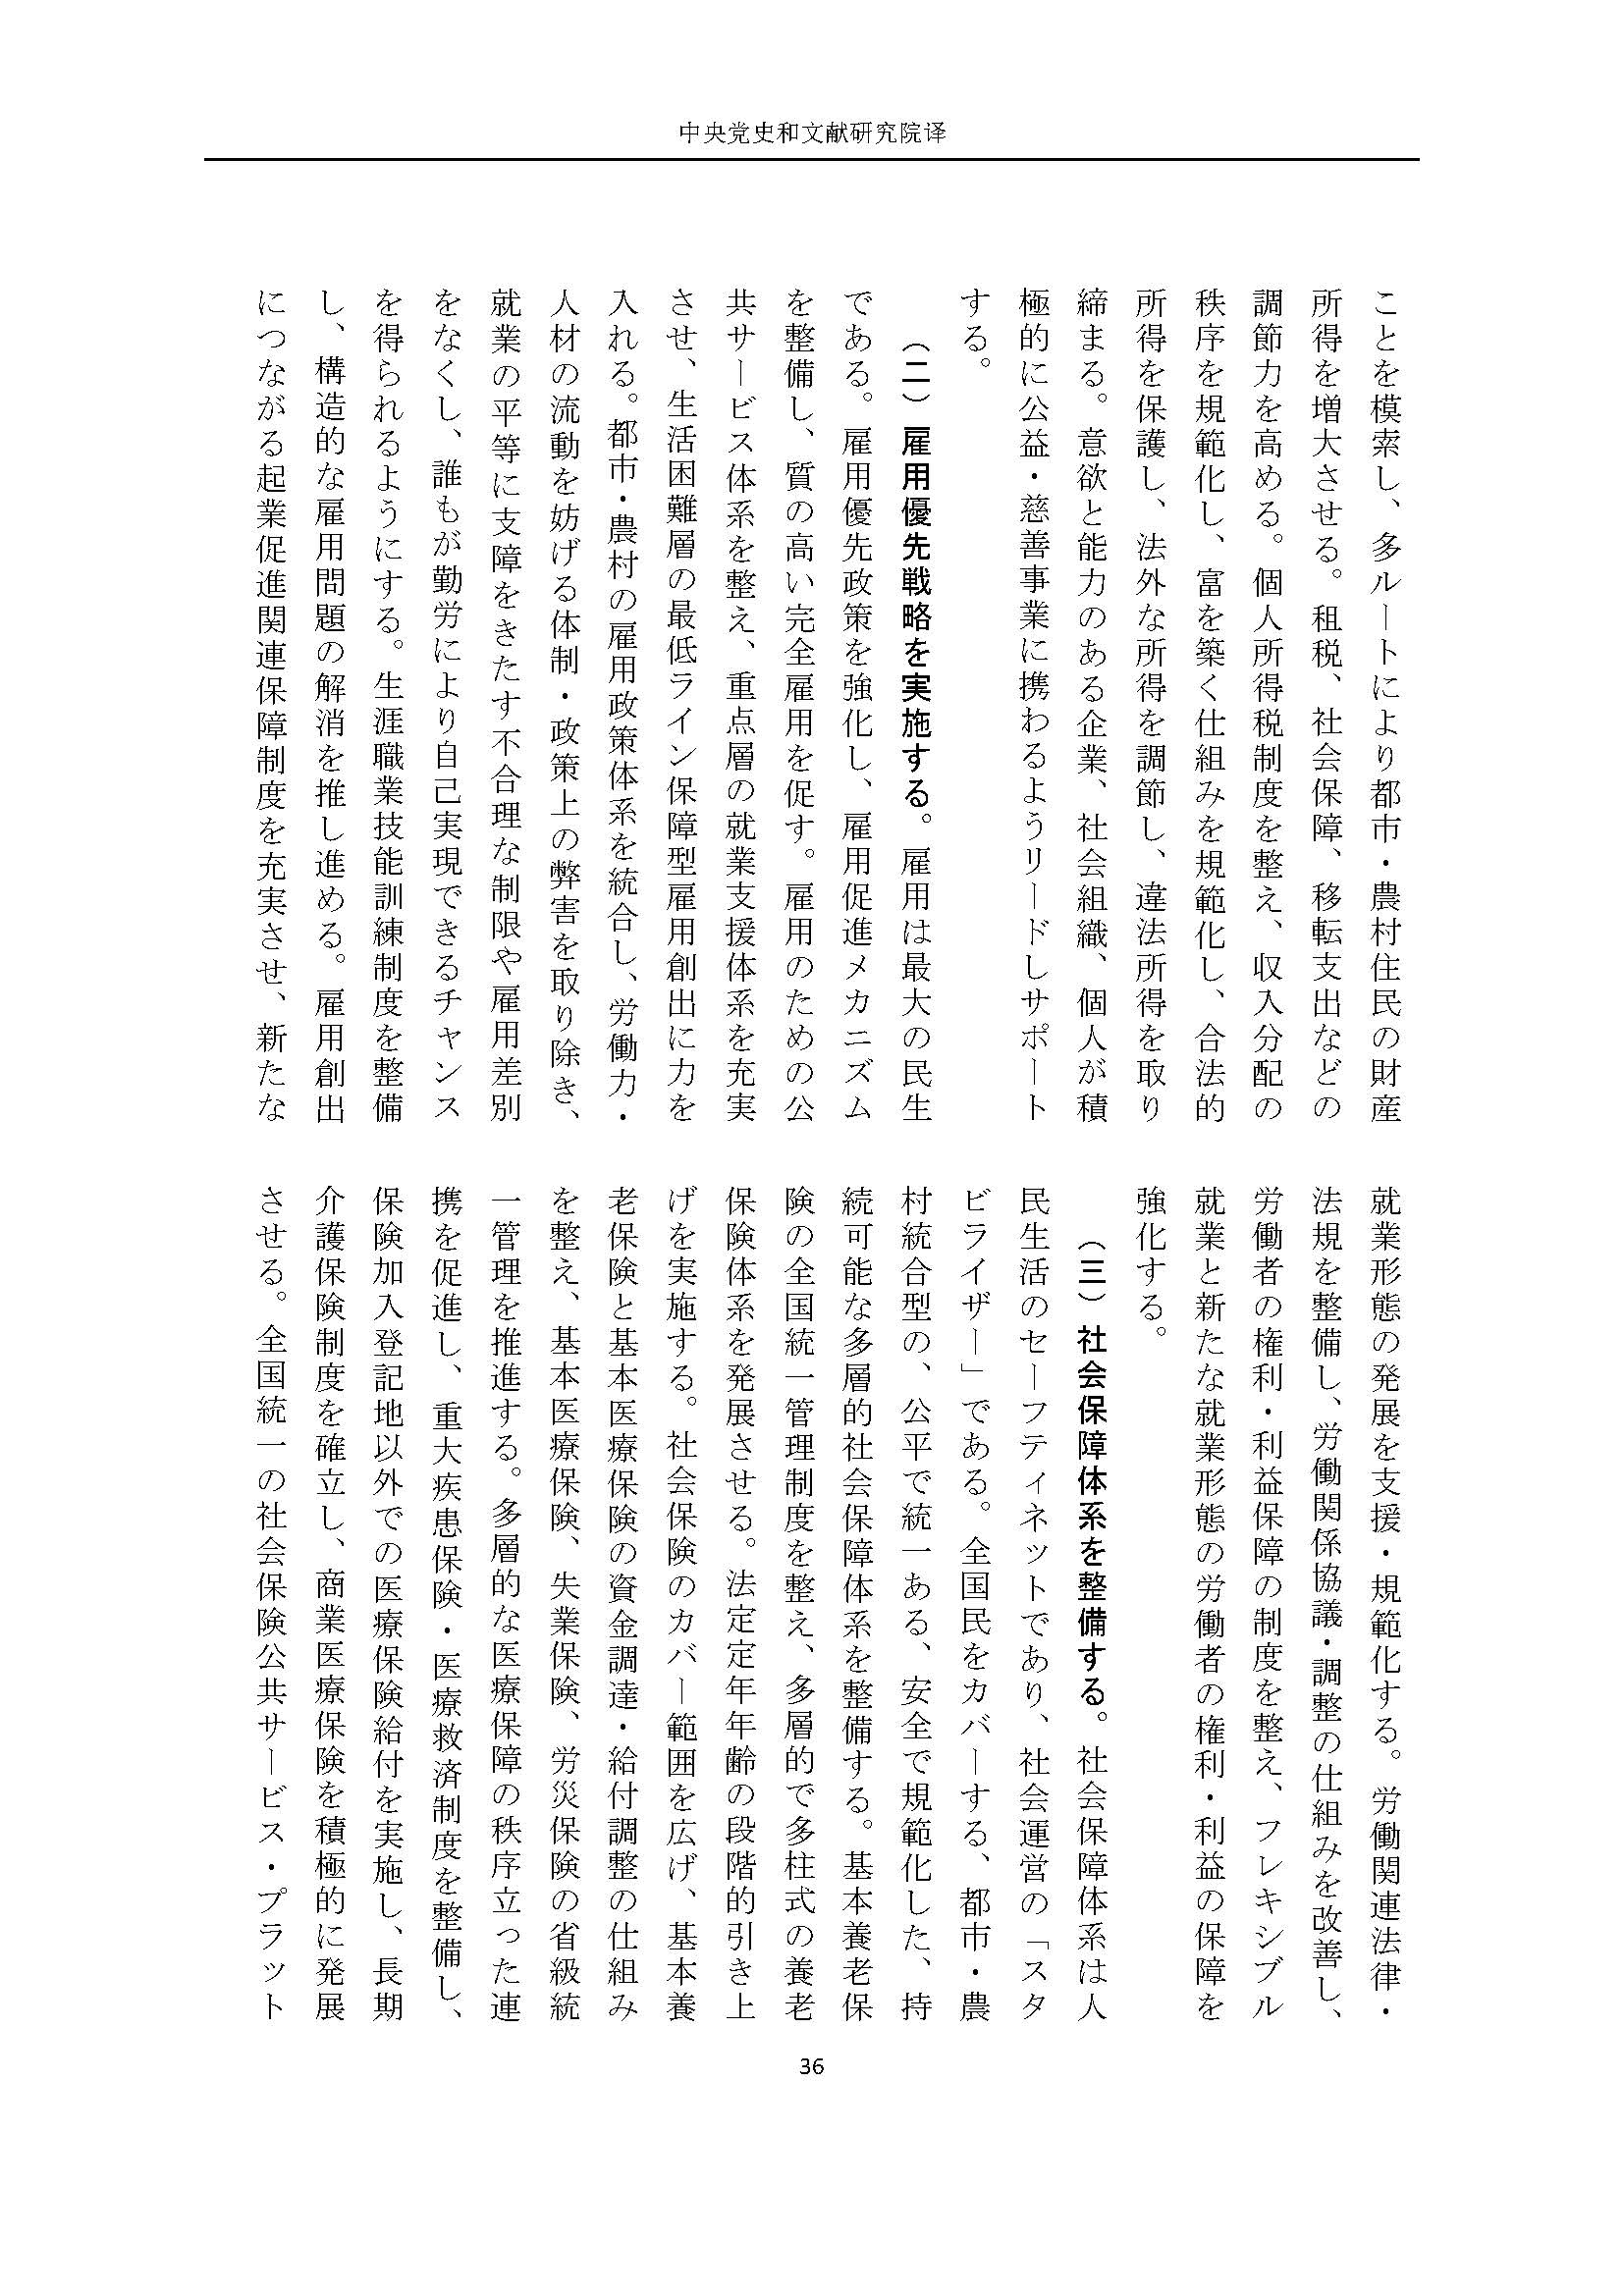 二十大报告（日文全文）_页面_37